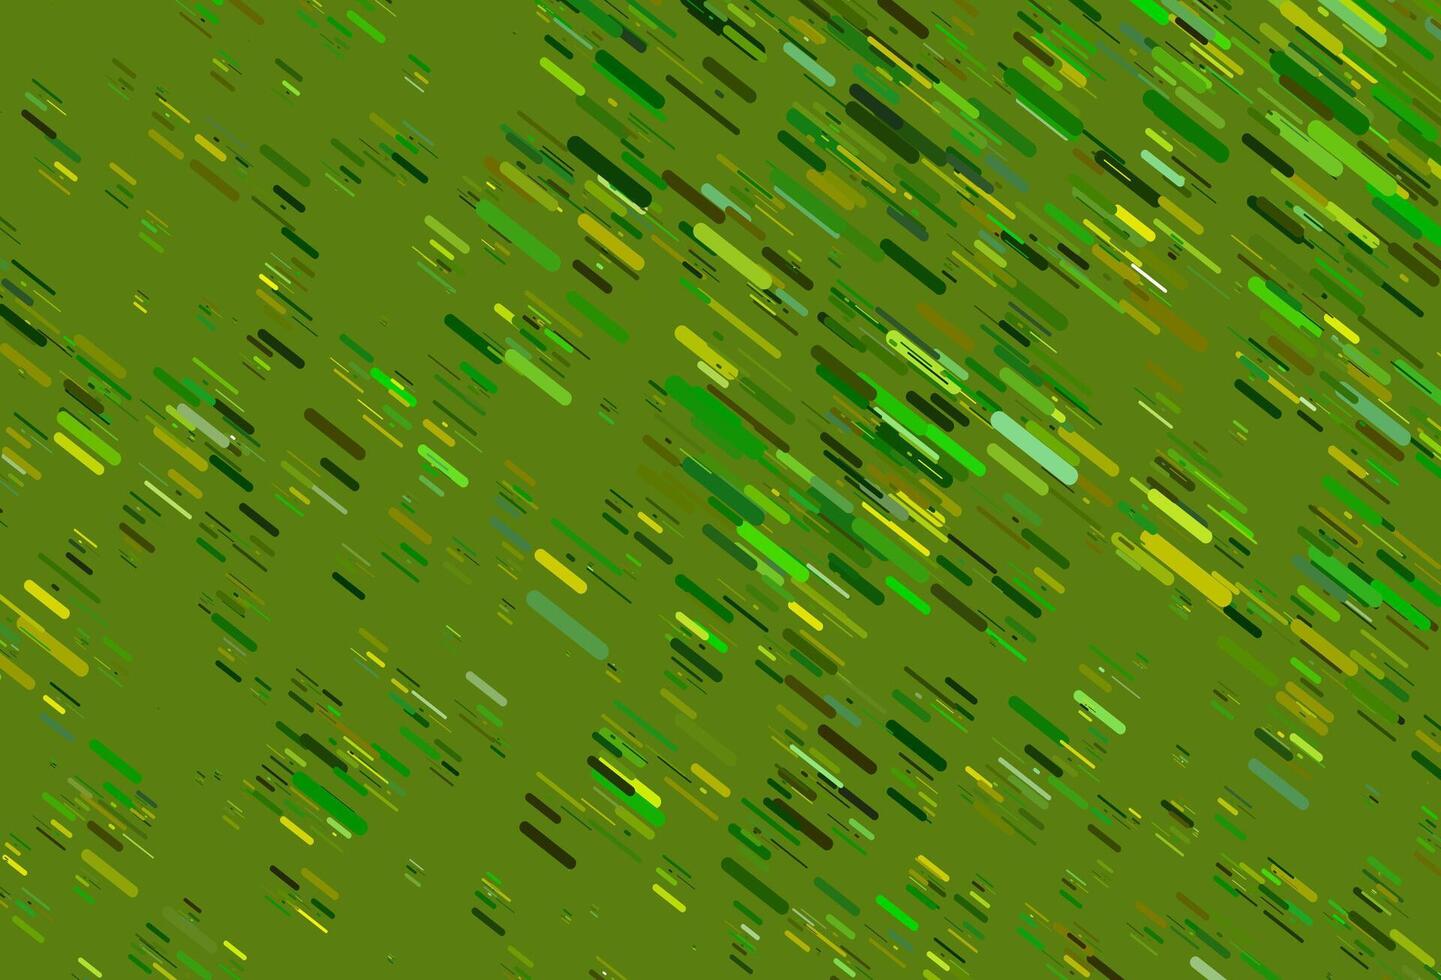 sfondo vettoriale verde chiaro, giallo con lunghe linee.